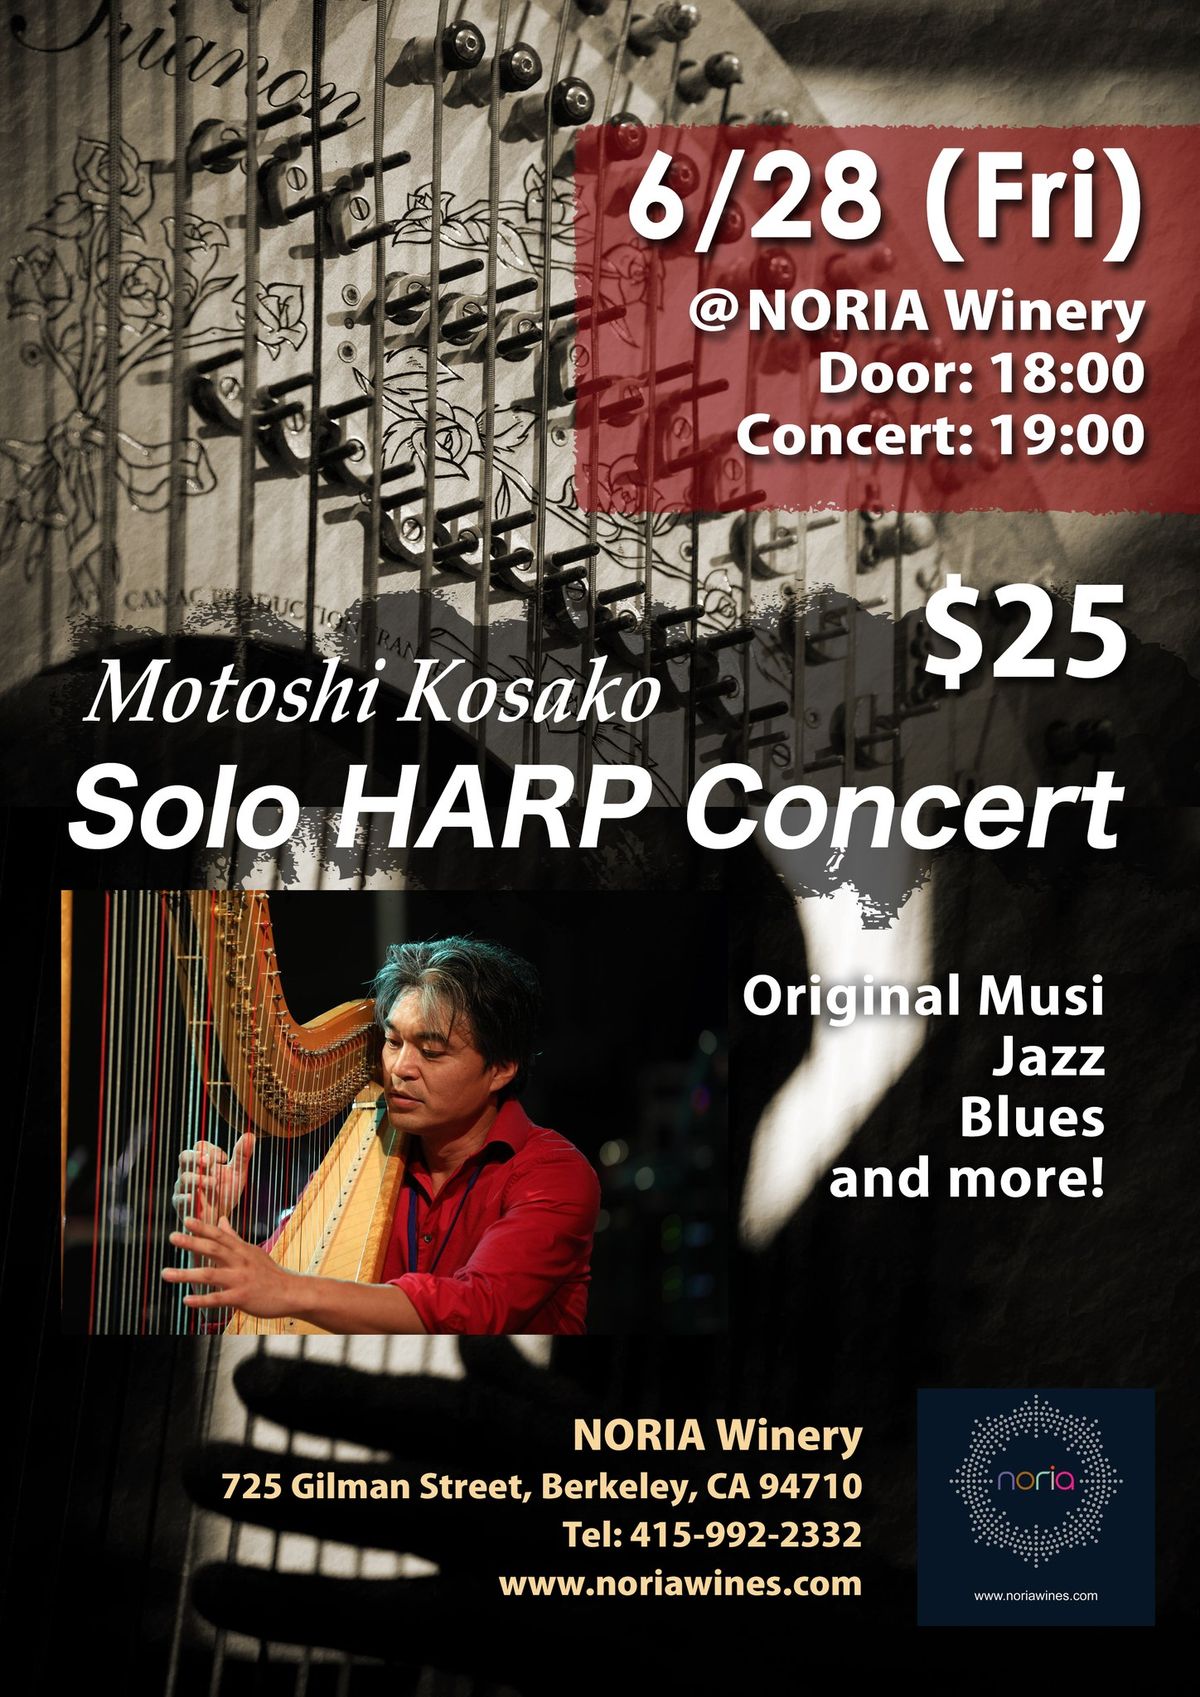 Motoshi Kosako Harp Concert @Noria Winery